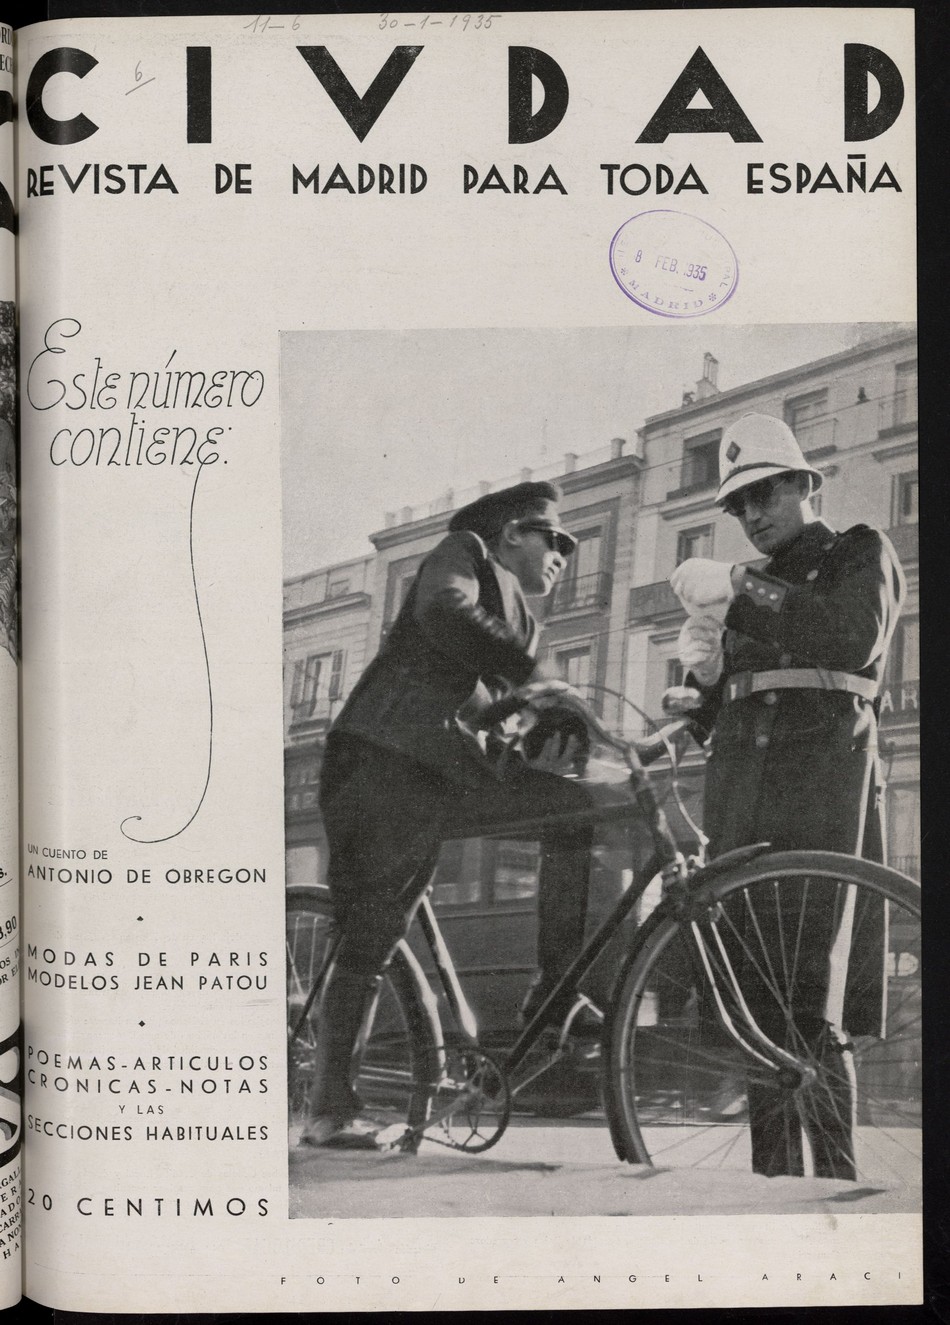 Ciudad: revista de Madrid para toda España del 30 de enero de 1935